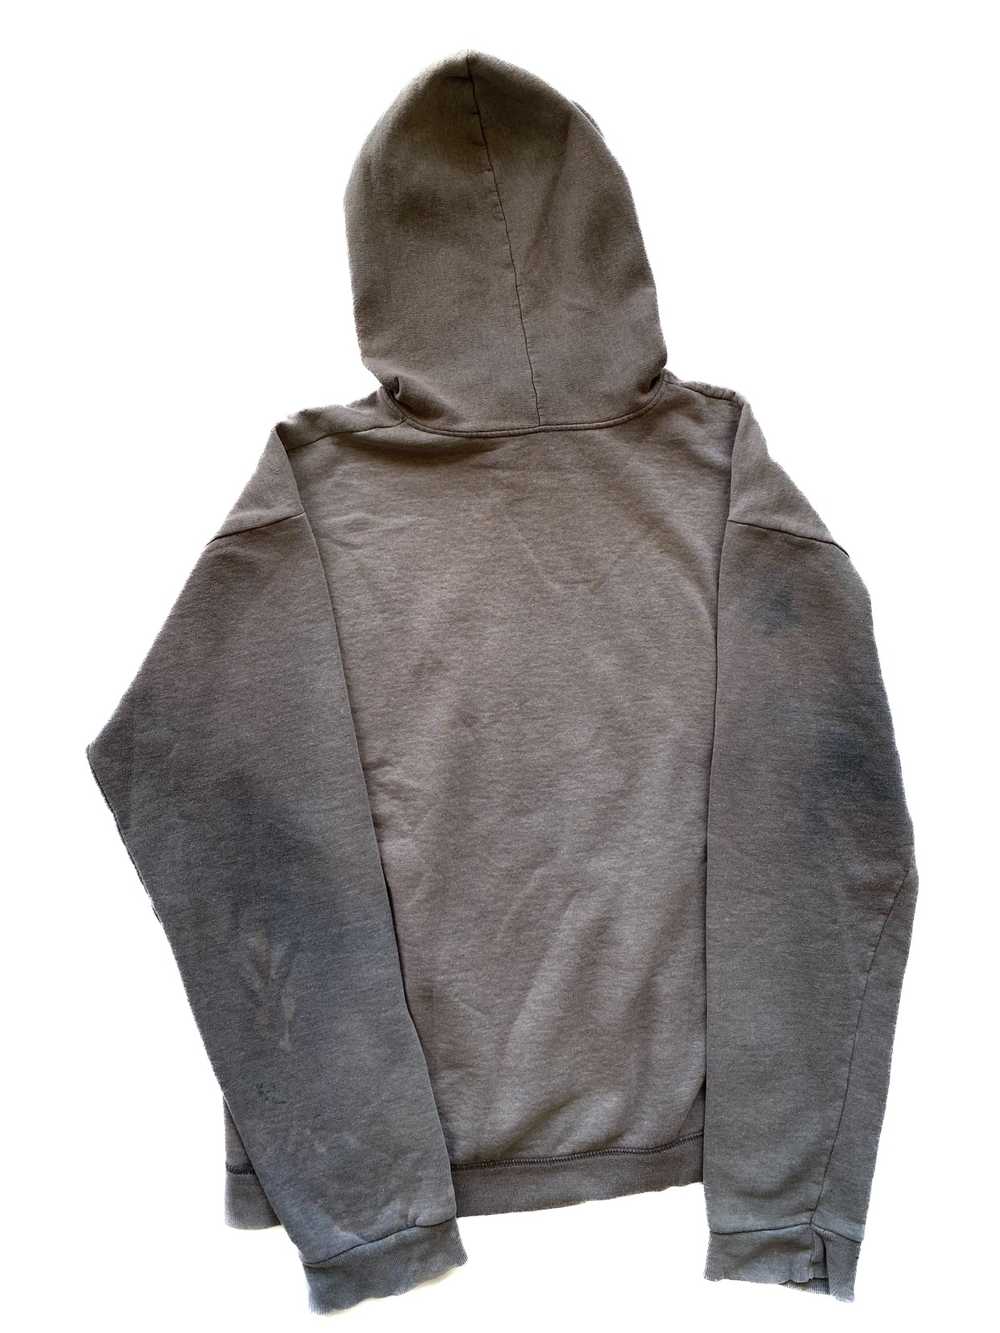 Hanes Distressed Hanes hoodie - image 2